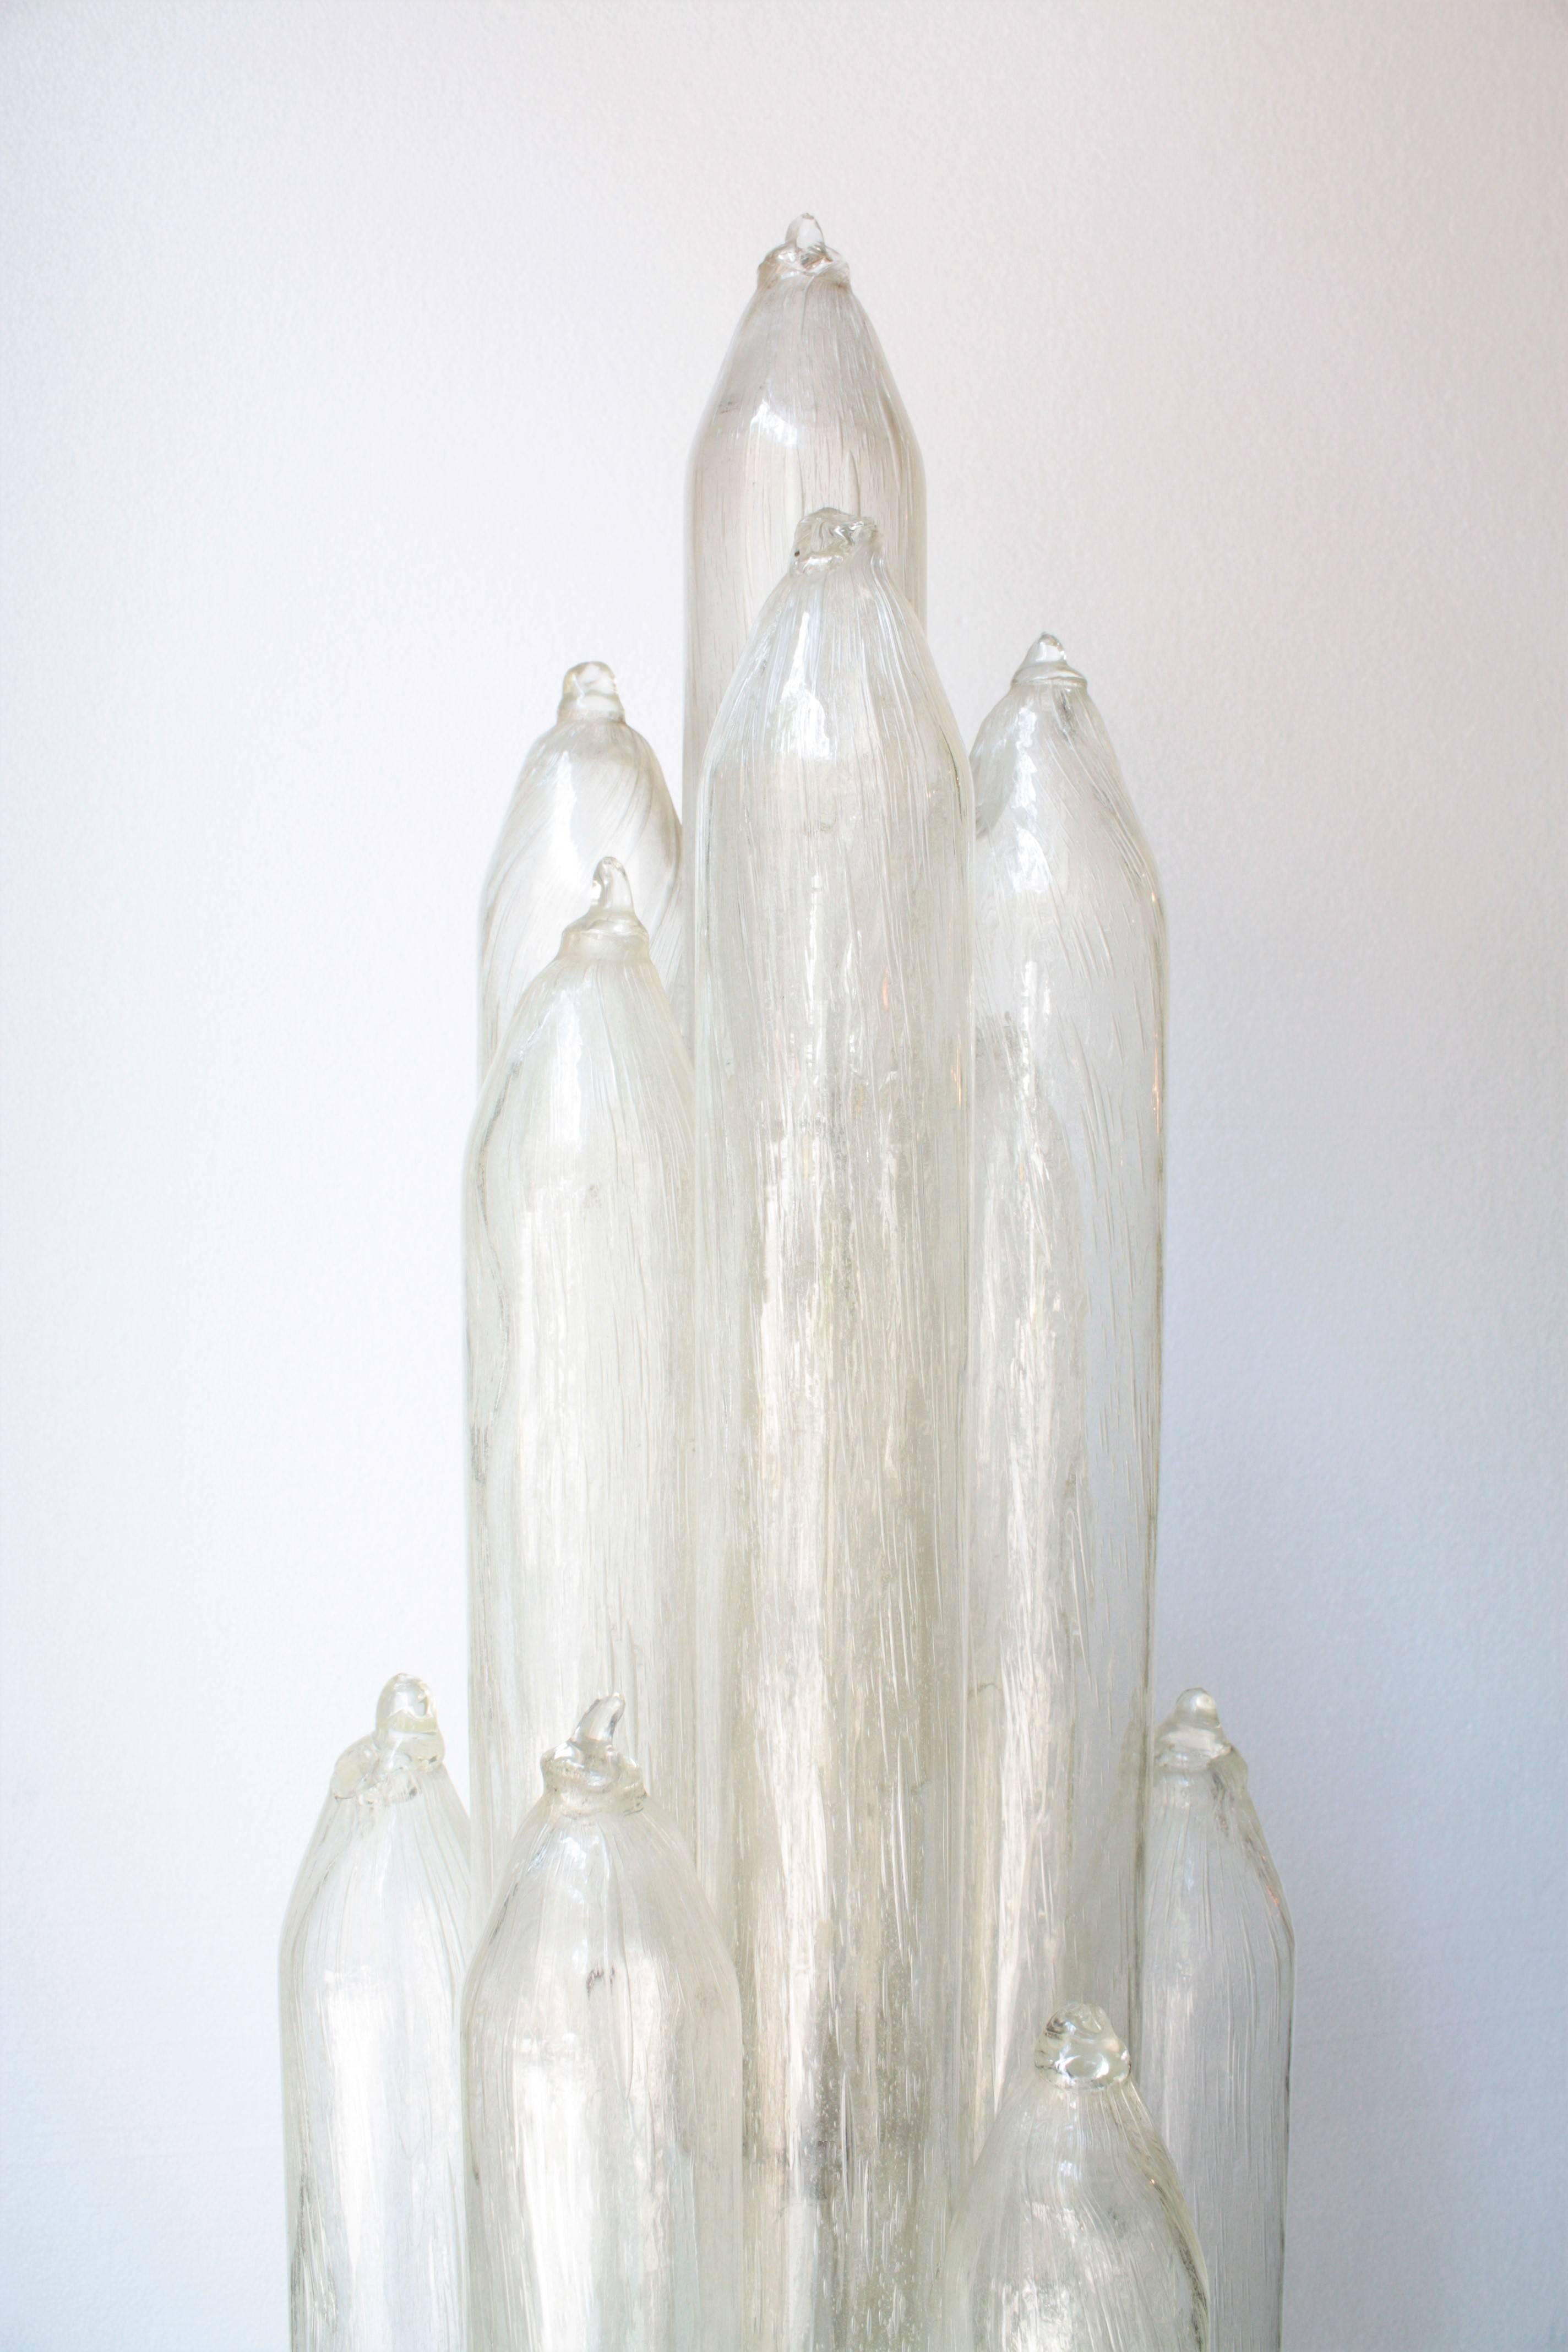 Italian Carlo Nason Mazzega Rocket Glass Floor Lamp, Italy, 1960s For Sale